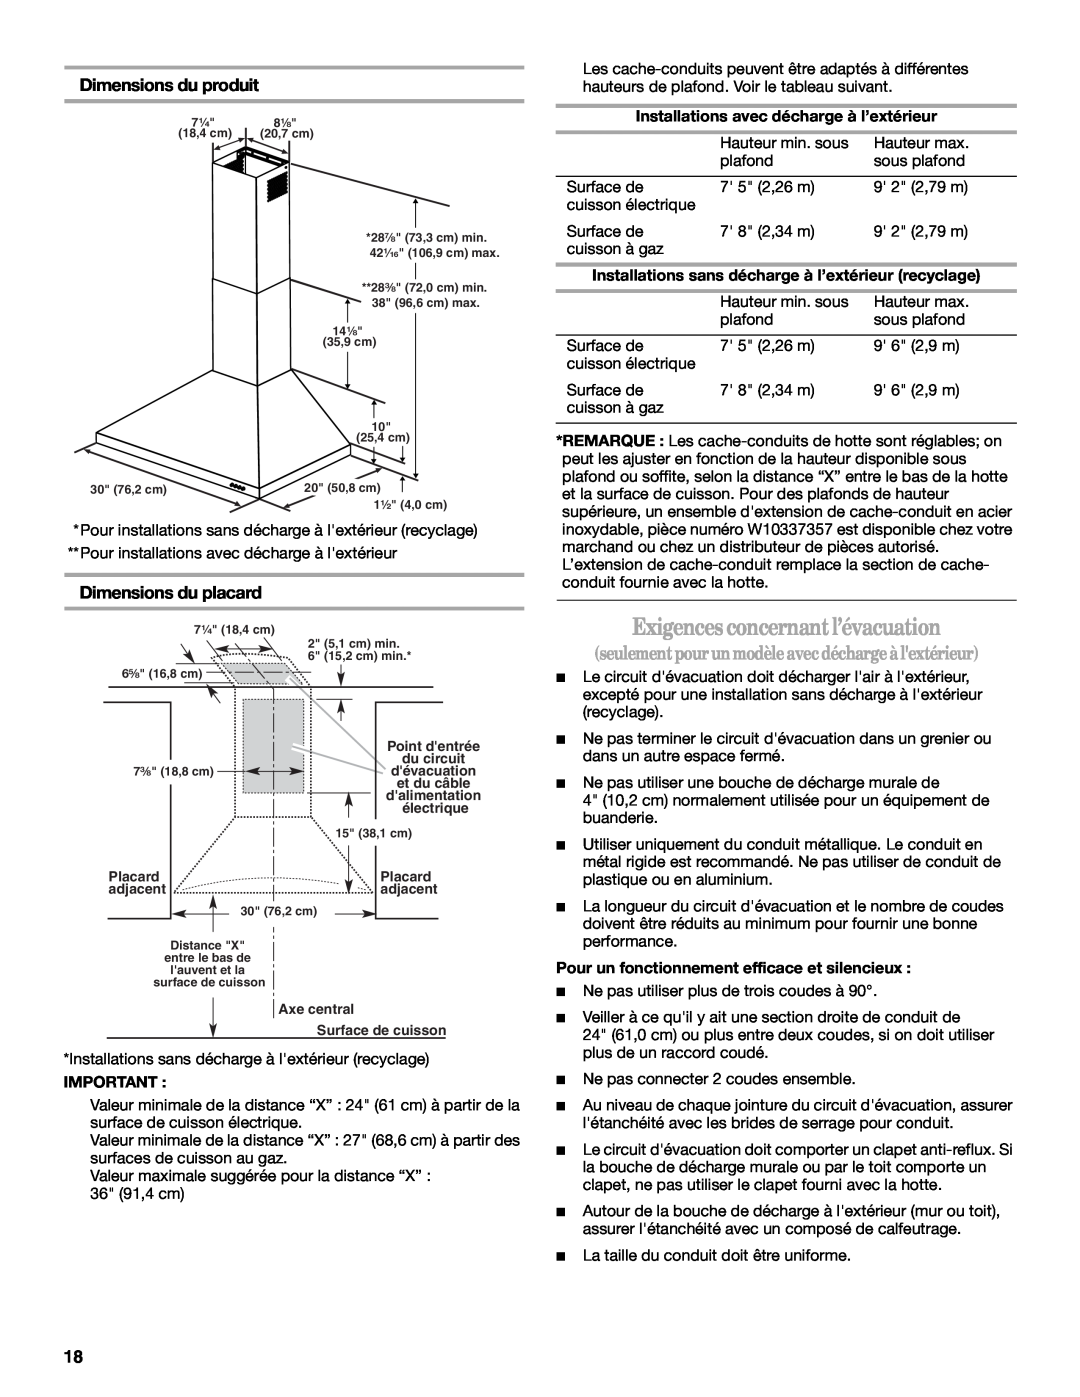 Whirlpool GXW7230DAS Exigencesconcernantl’évacuation, seulementpourunmodèle avecdéchargeàlextérieur, Dimensions du produit 